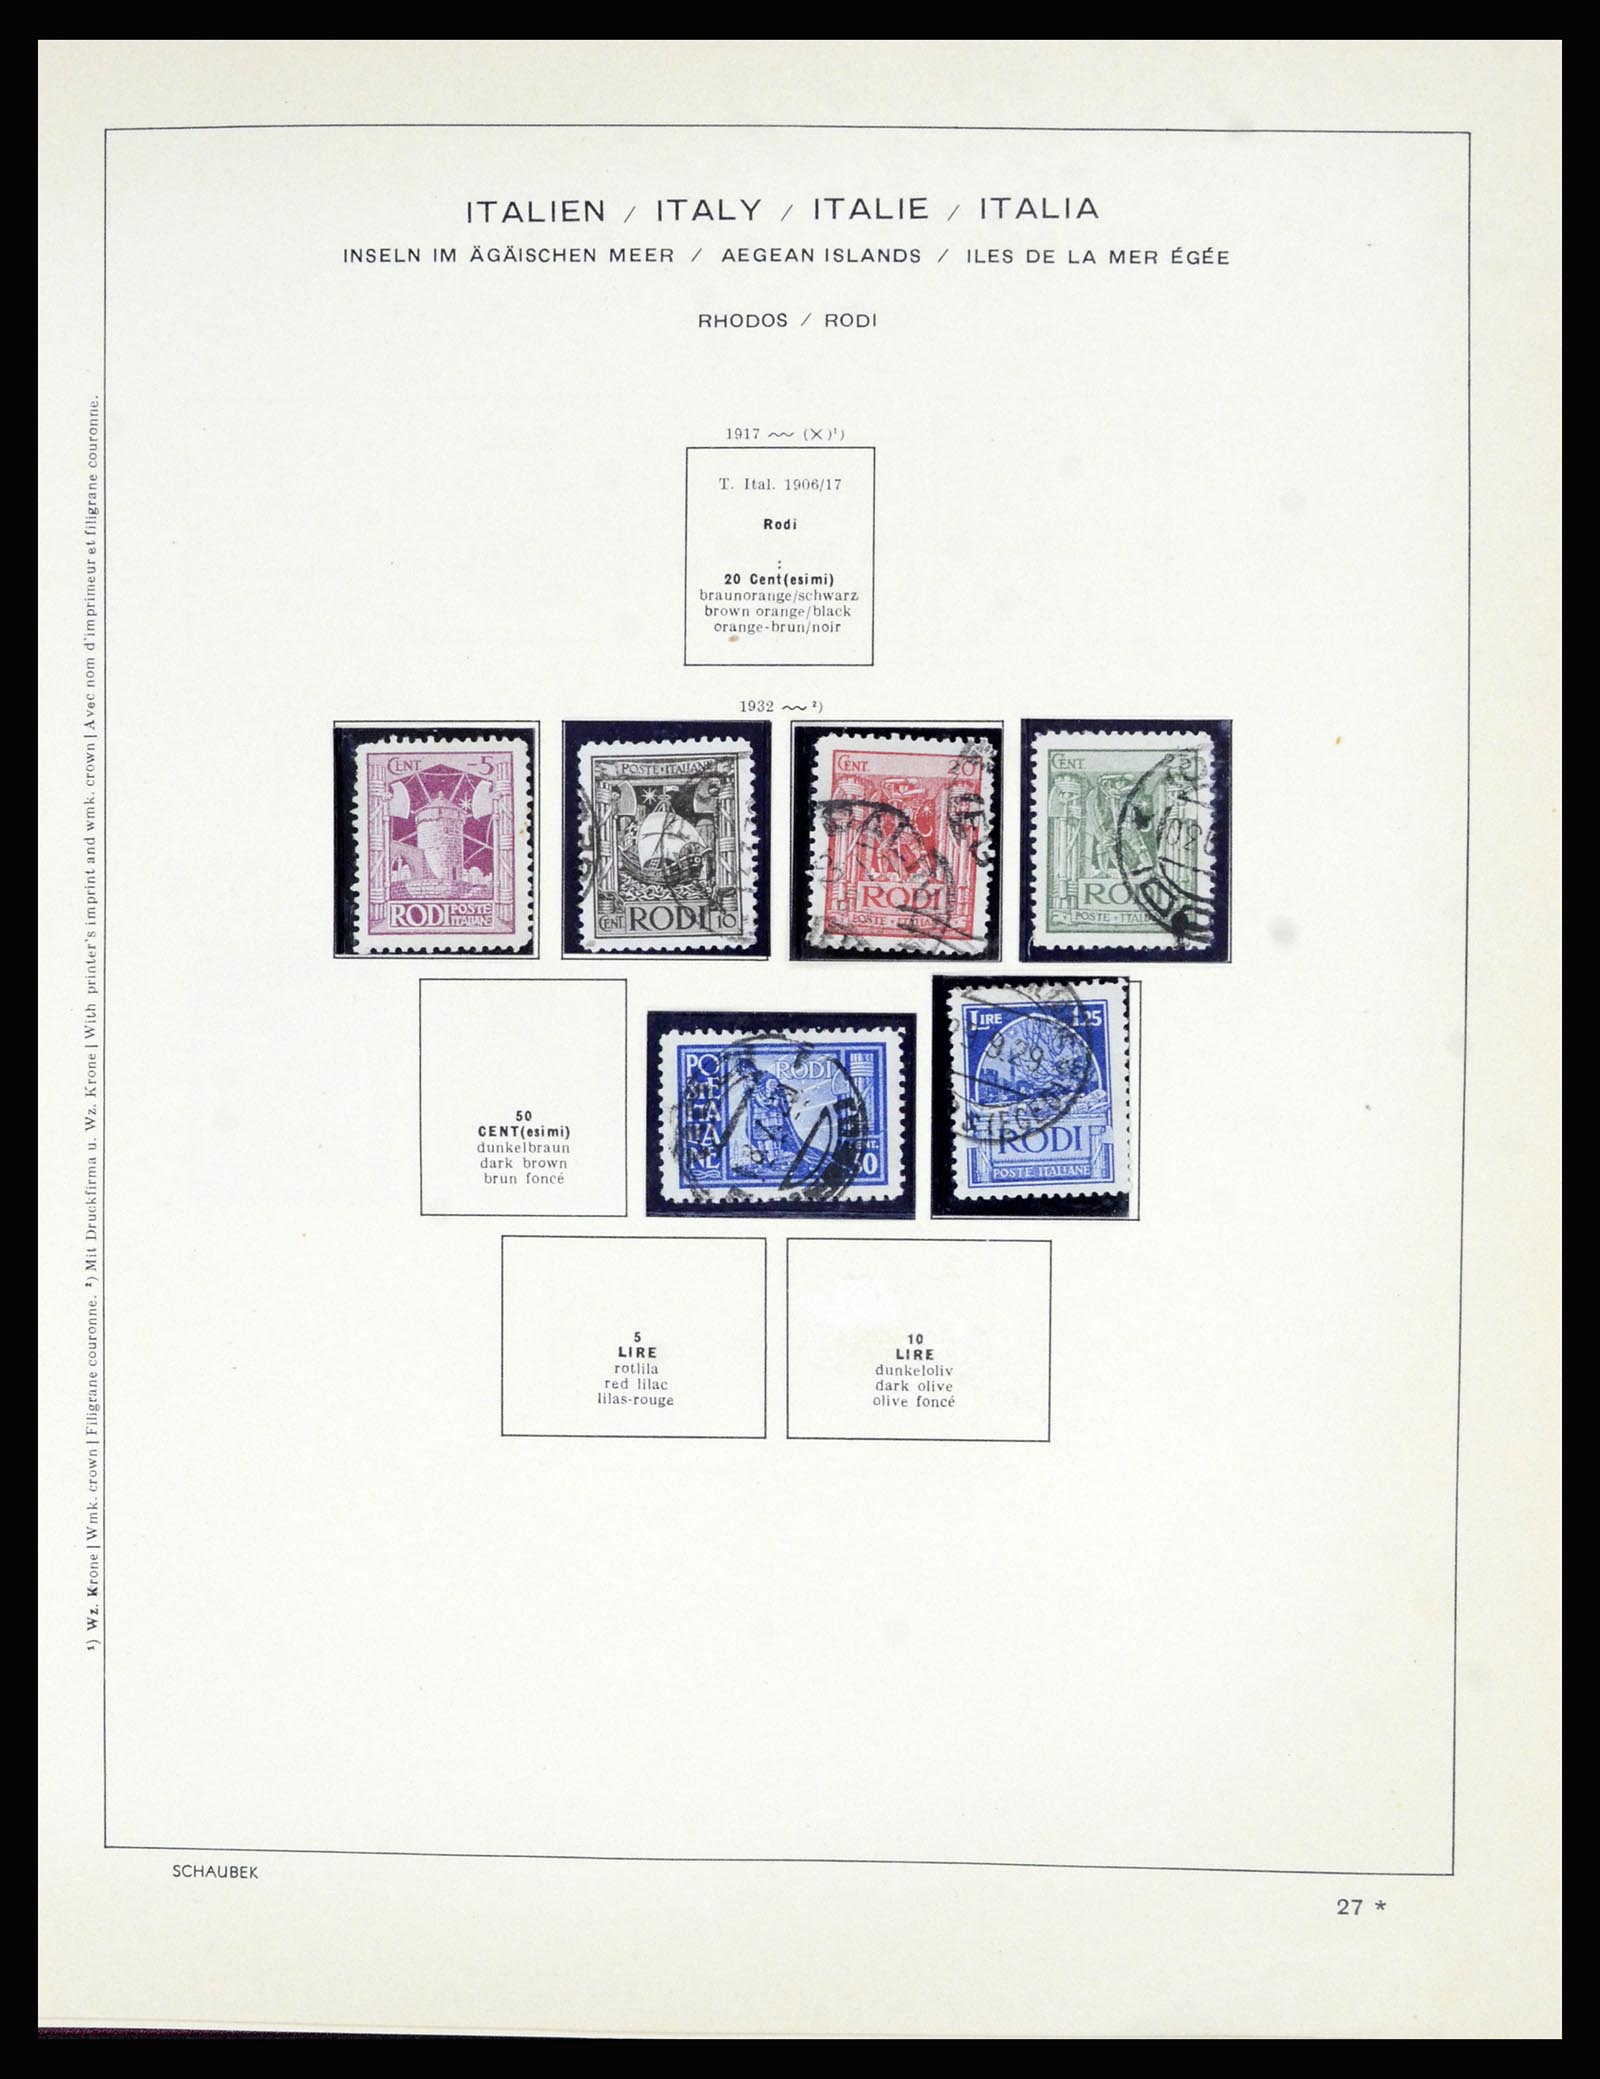 36576 035 - Stamp collection 36576 Italiaanse gebieden en koloniën 1874-1954.